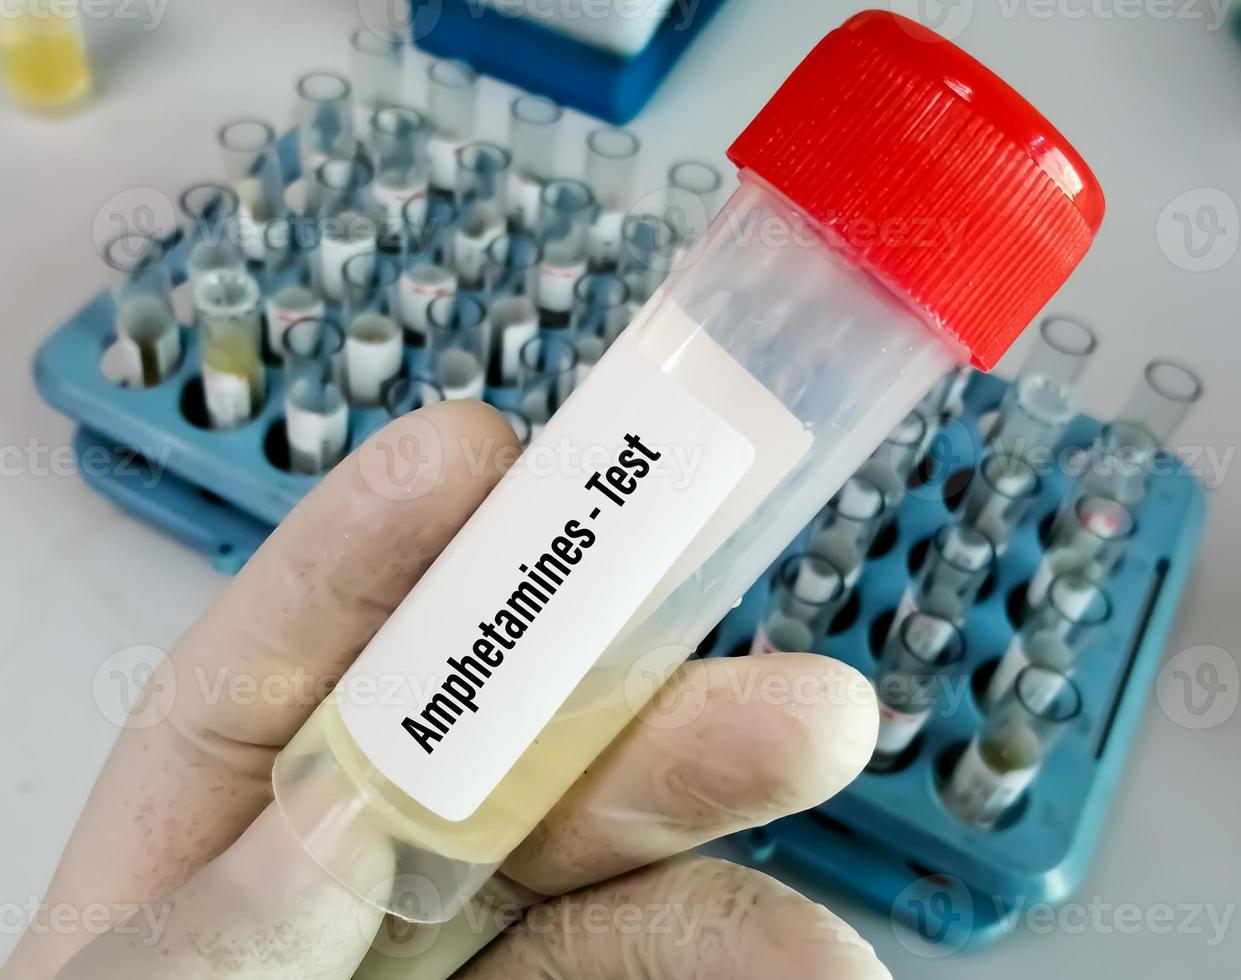 wetenschapper houdt urinemonster vast voor amfetamine-drugstest. drugstest is een technische analyse van het monster om illegaal drugsmisbruik als amfetamine te bepalen foto